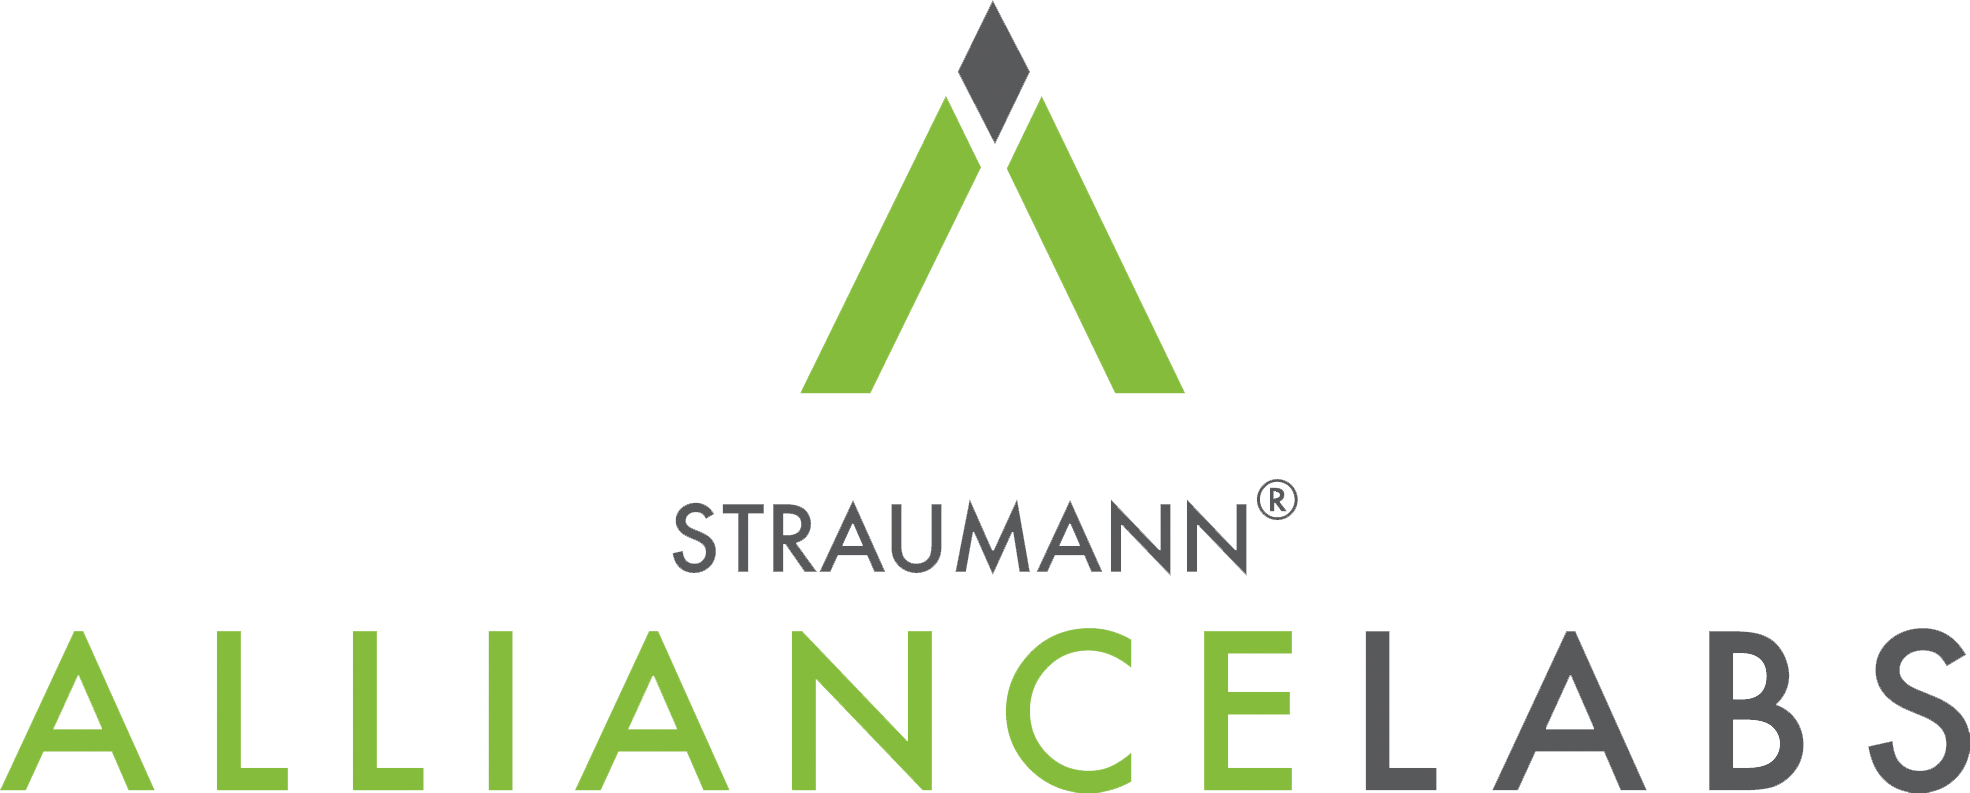 Straumann Alliance Lab